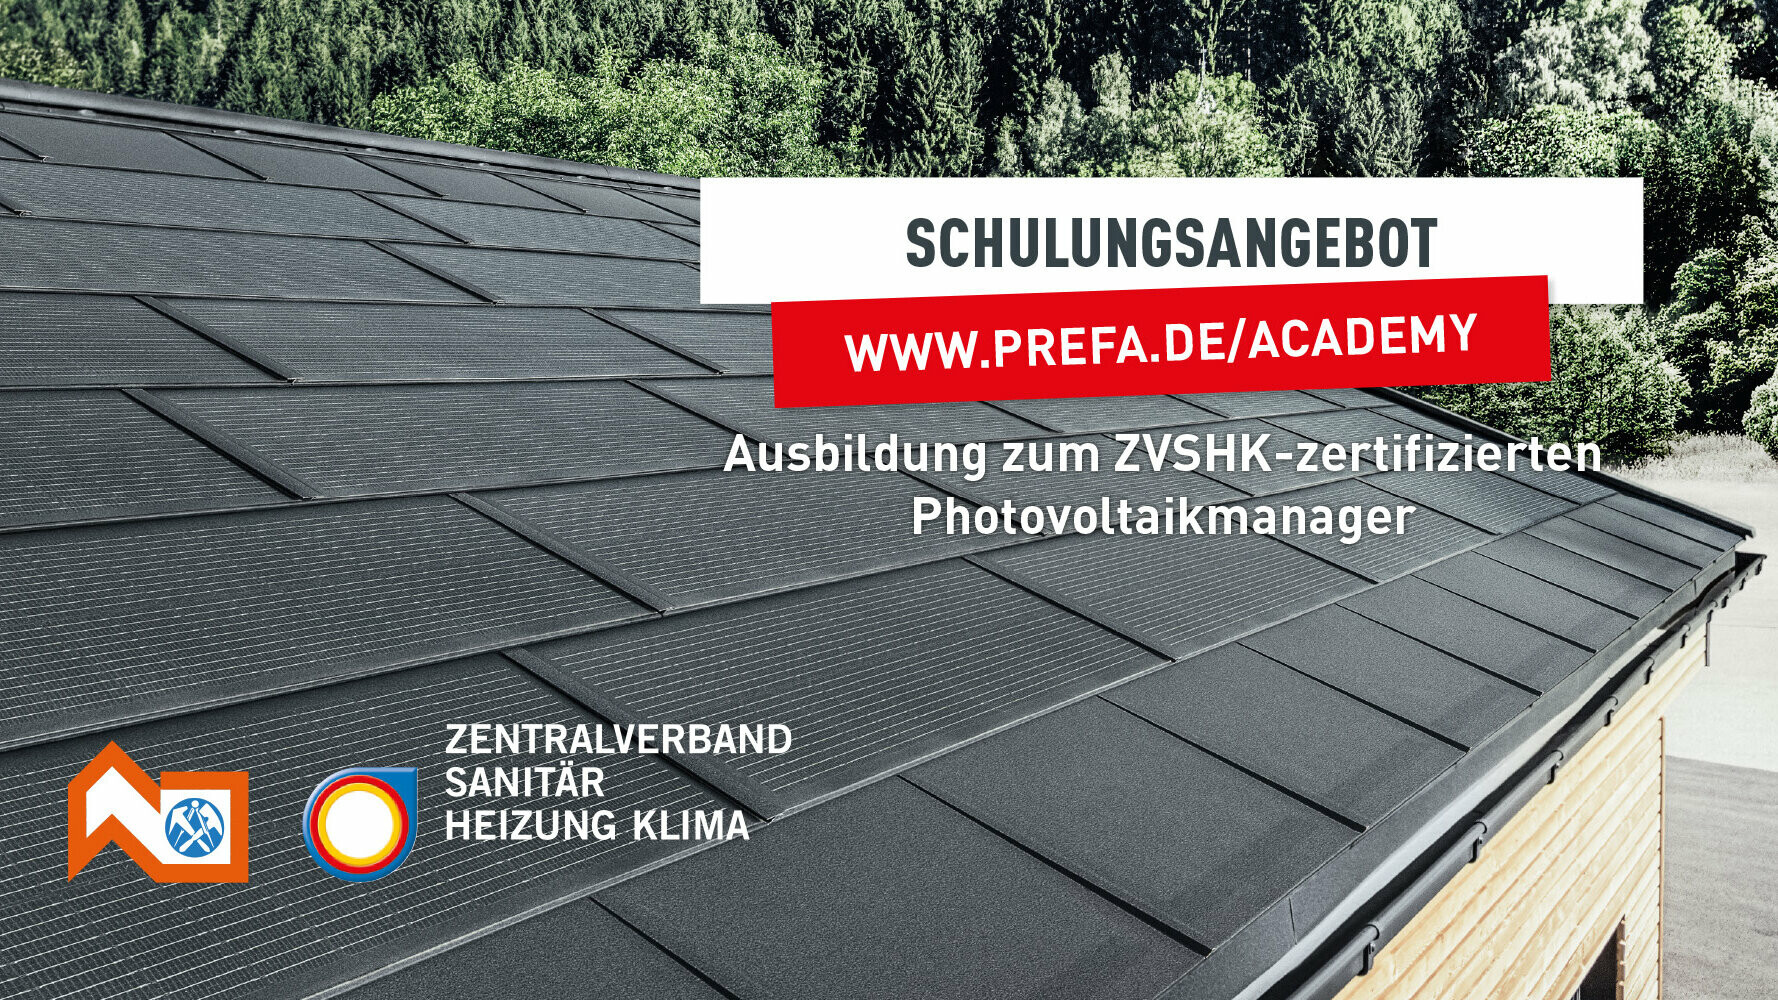 Headerbild: Ausbildung zum ZVSHK-zertifizierten Photovoltaikmanager in der PREFA Academy. Links unten sind die Logos der Zentralverbände ZVSHK und ZVDH abgebildet.